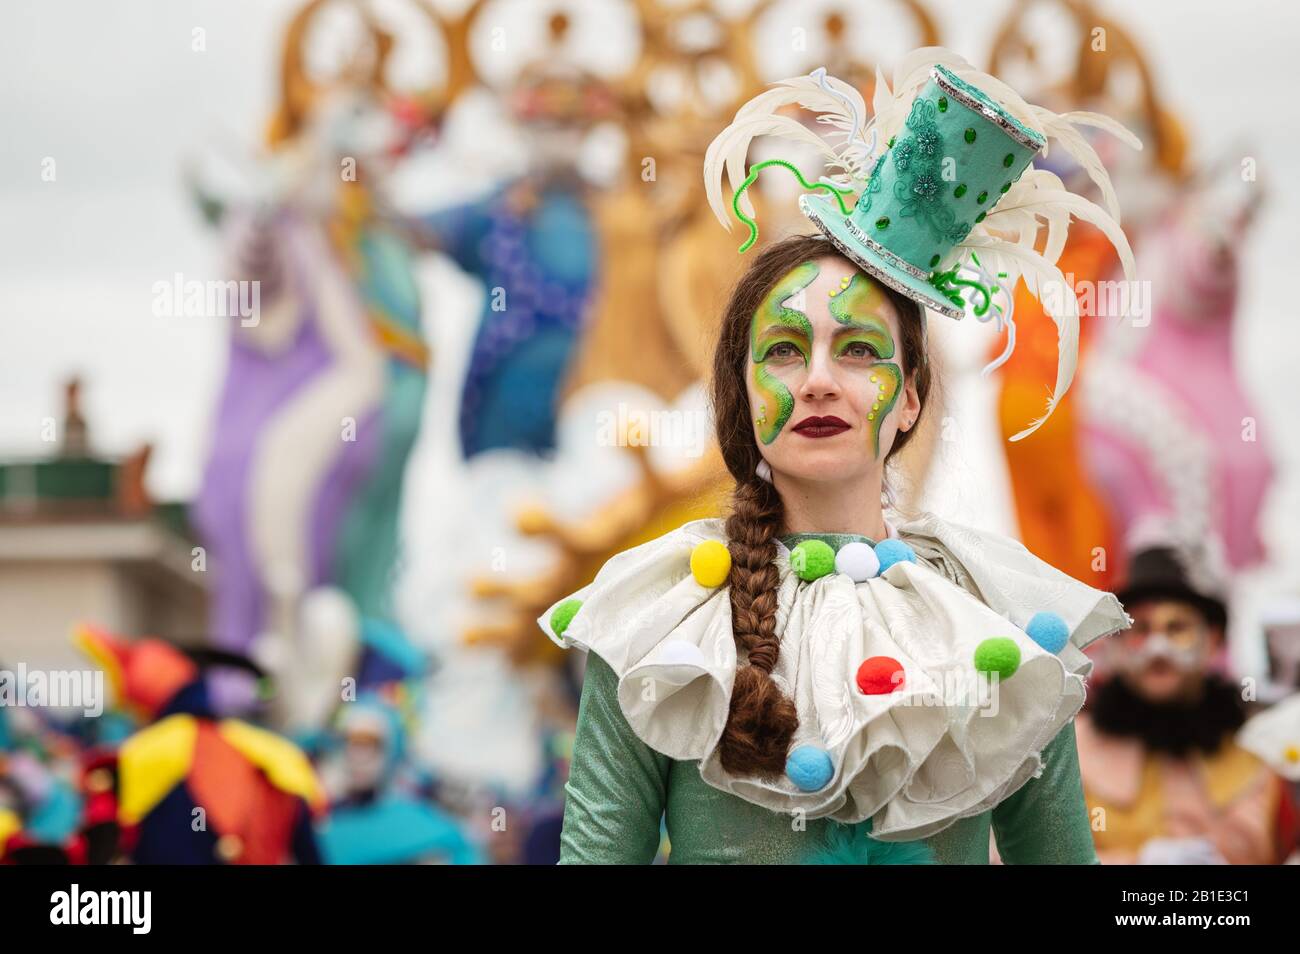 Viareggio, ITALIEN - 23. FEBRUAR 2020: Der Karnevalsumzug schwimmt auf den Straßen von Viareggio, Italien. Karneval von Viareggio gilt als einer der wichtigsten Karnevale Italiens. Stockfoto